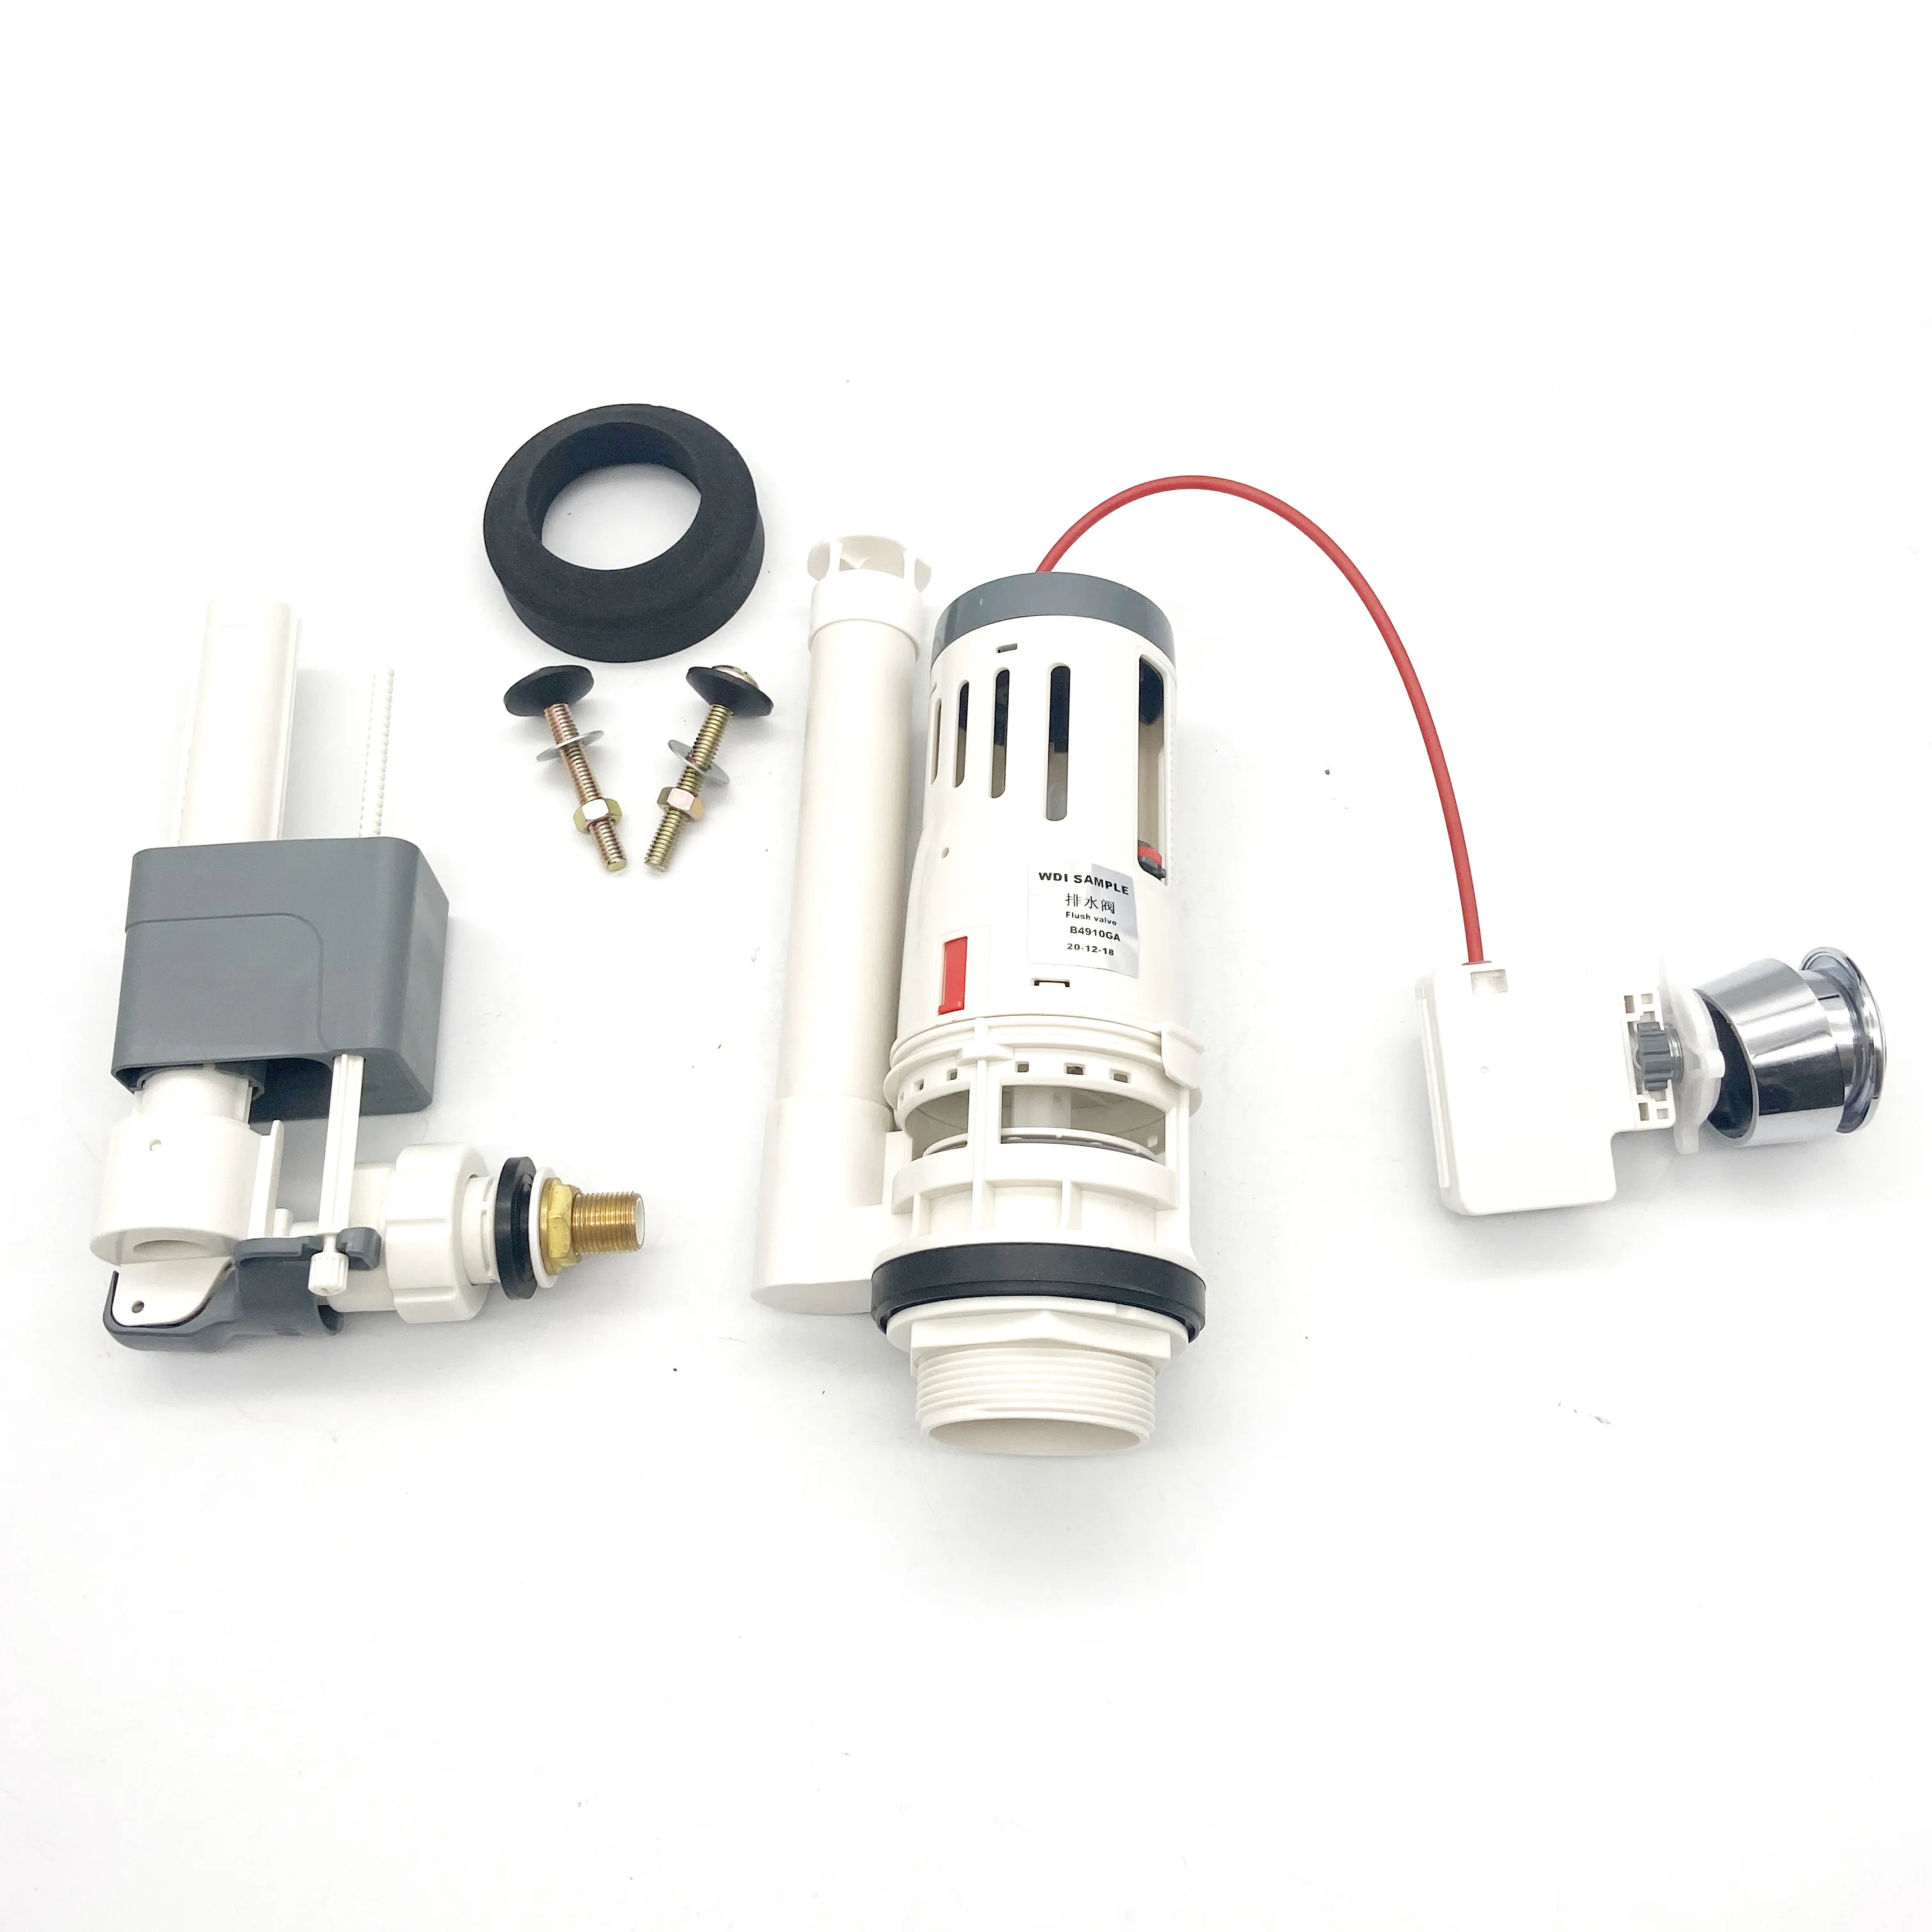 Válvula de descarga de plástico de alta calidad para inodoro, mecanismo de ahorro de agua para baño, accesorios de cisterna